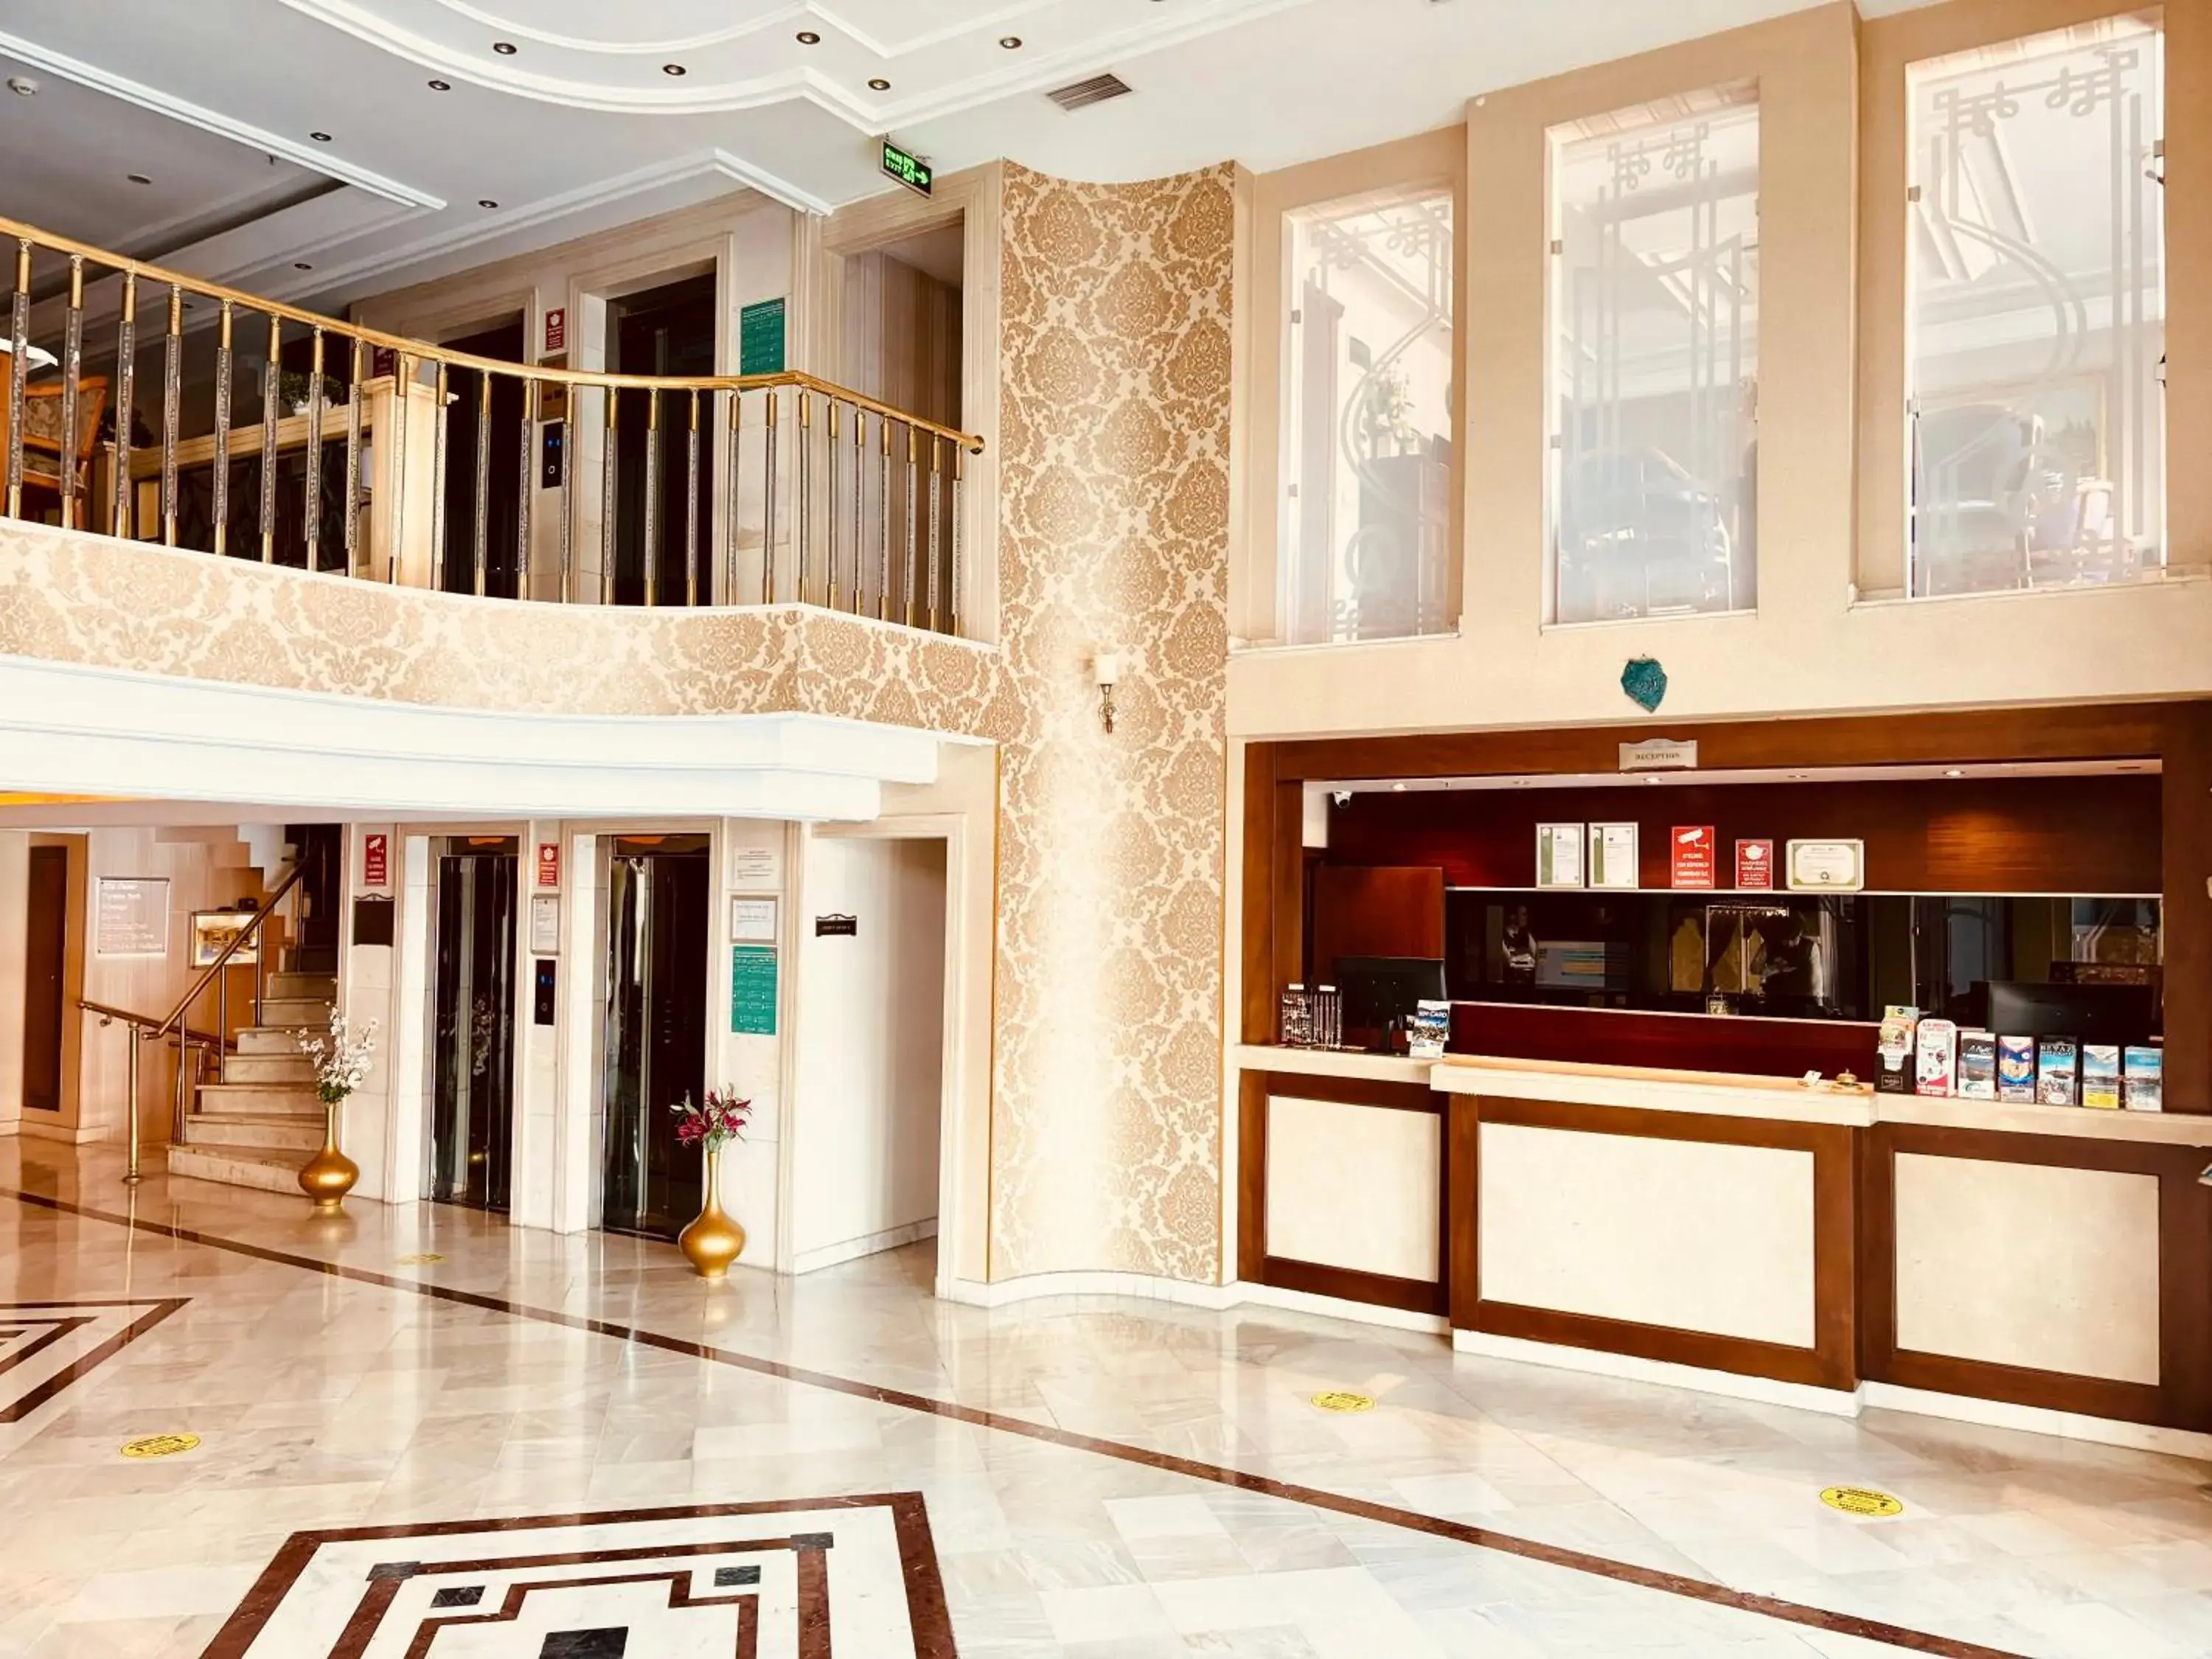 Lobby or reception, Lobby/Reception in Askoc Hotel & SPA